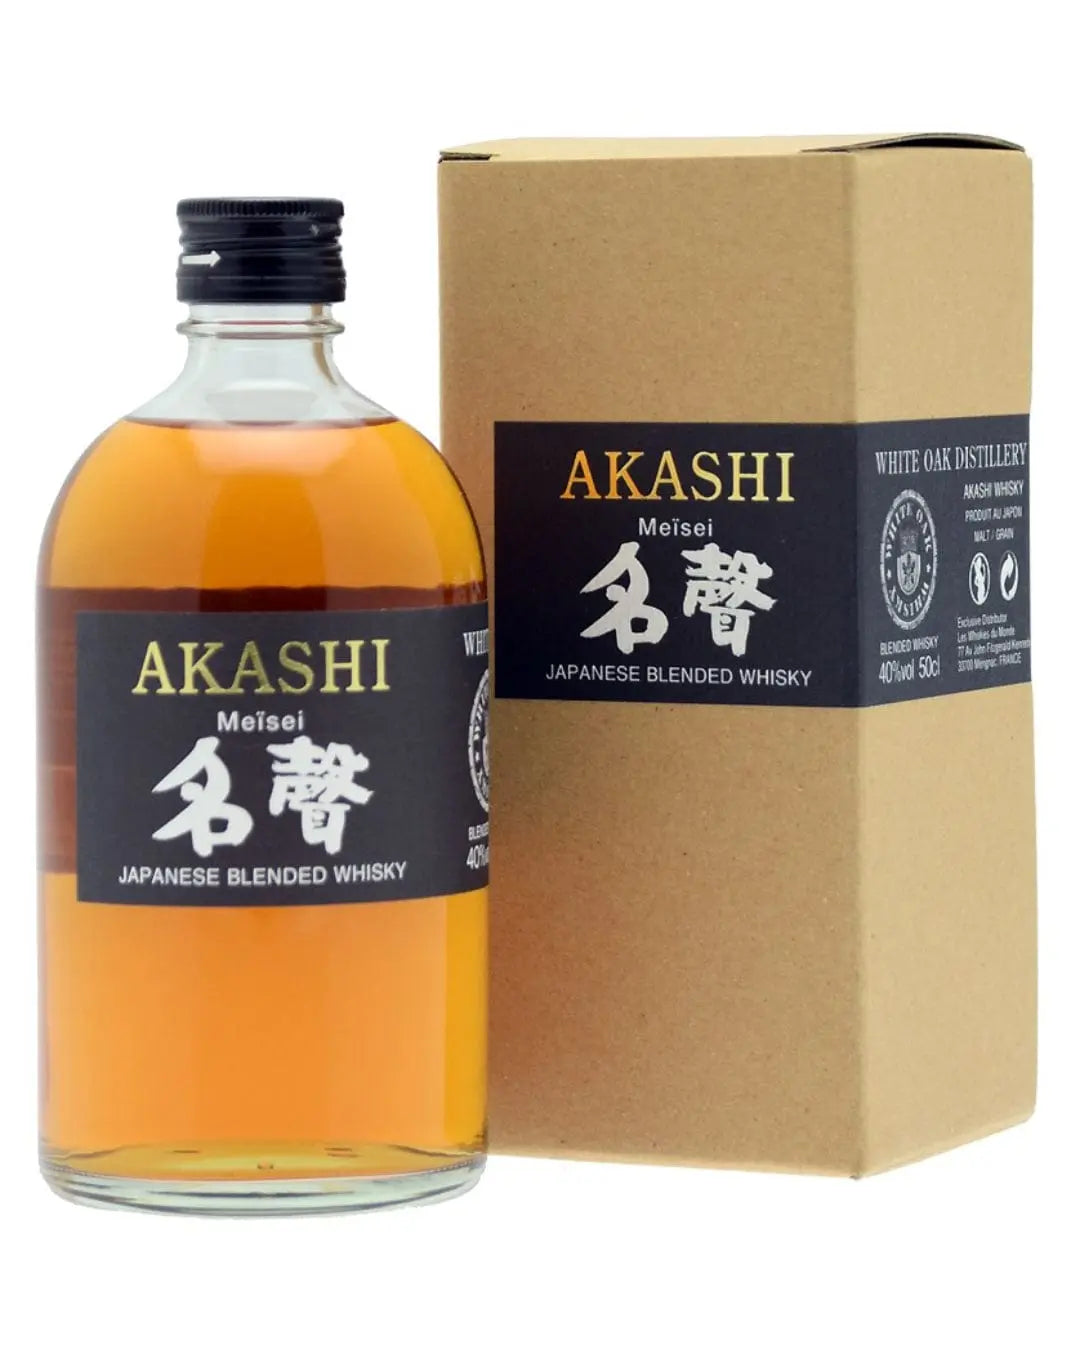 Akashi Meisei Japanese Blended Whisky, 50 cl Spirits